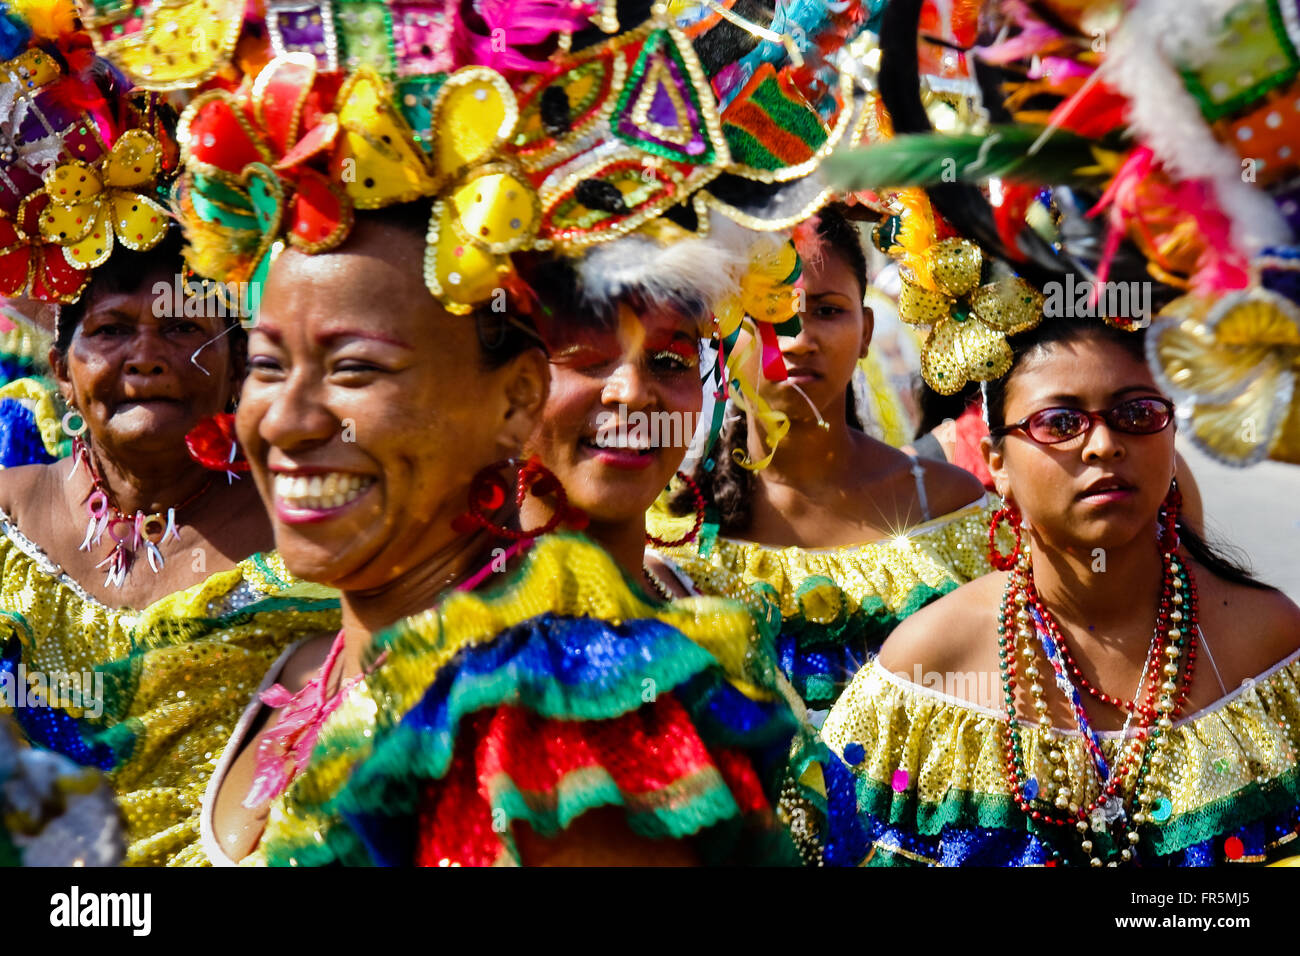 Kolumbianische Frauen, tragen eine bunte Kostüme, Tänze der Karneval von Barranquilla, Kolumbien. Stockfoto